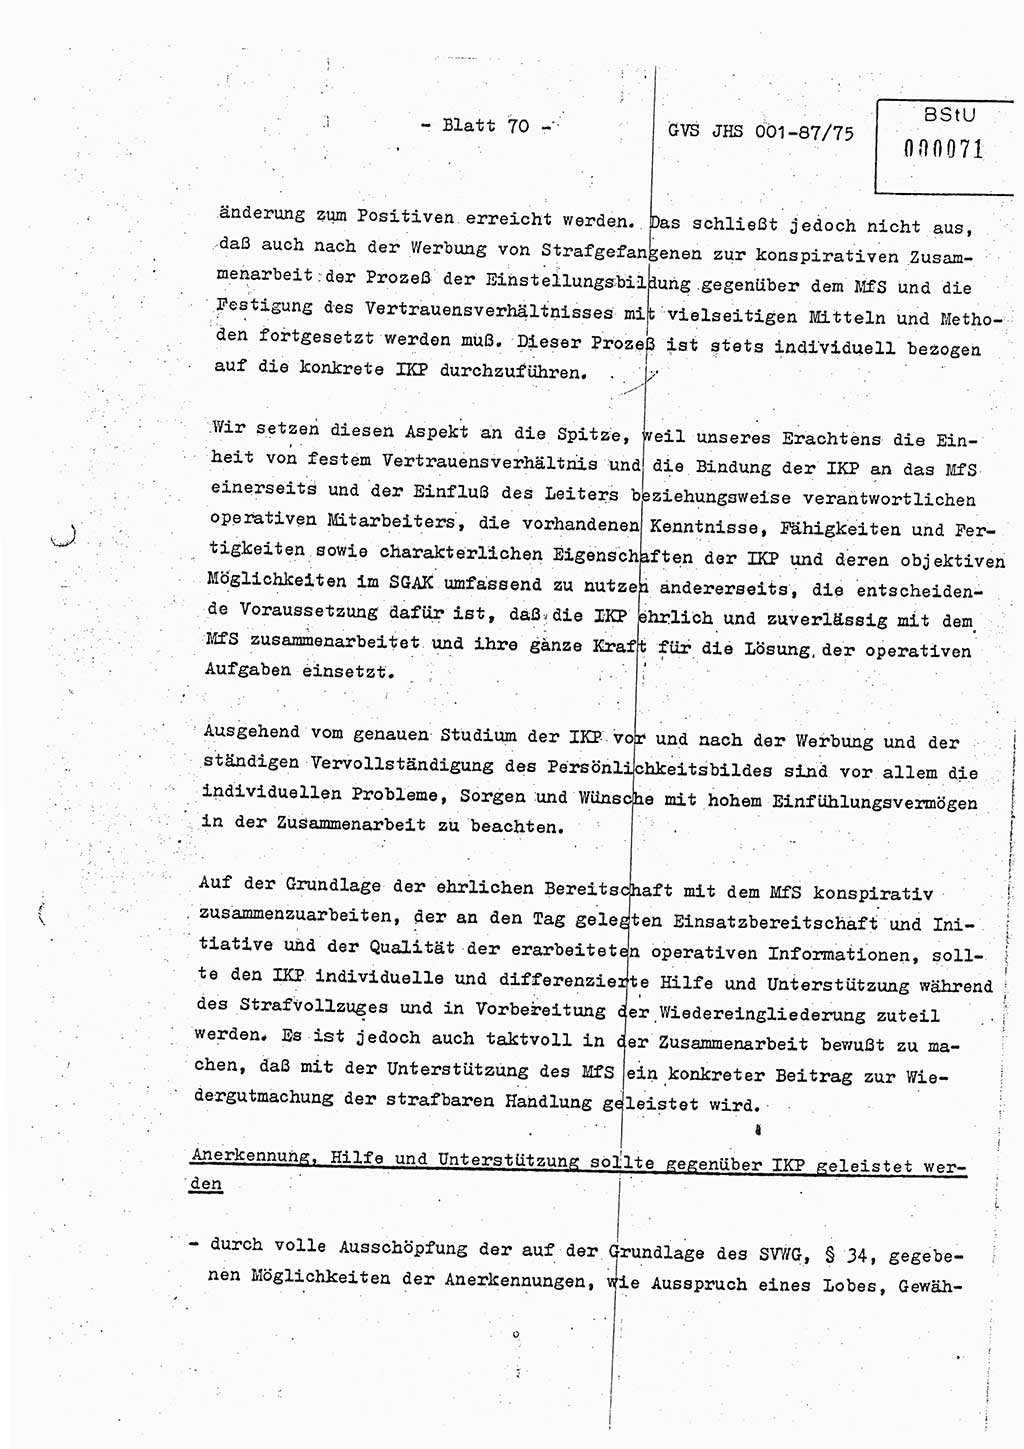 Diplomarbeit Hauptmann Volkmar Heinz (Abt. ⅩⅣ), Oberleutnant Lothar Rüdiger (BV Lpz. Abt. Ⅺ), Ministerium für Staatssicherheit (MfS) [Deutsche Demokratische Republik (DDR)], Juristische Hochschule (JHS), Geheime Verschlußsache (GVS) o001-87/75, Potsdam 1975, Seite 70 (Dipl.-Arb. MfS DDR JHS GVS o001-87/75 1975, S. 70)